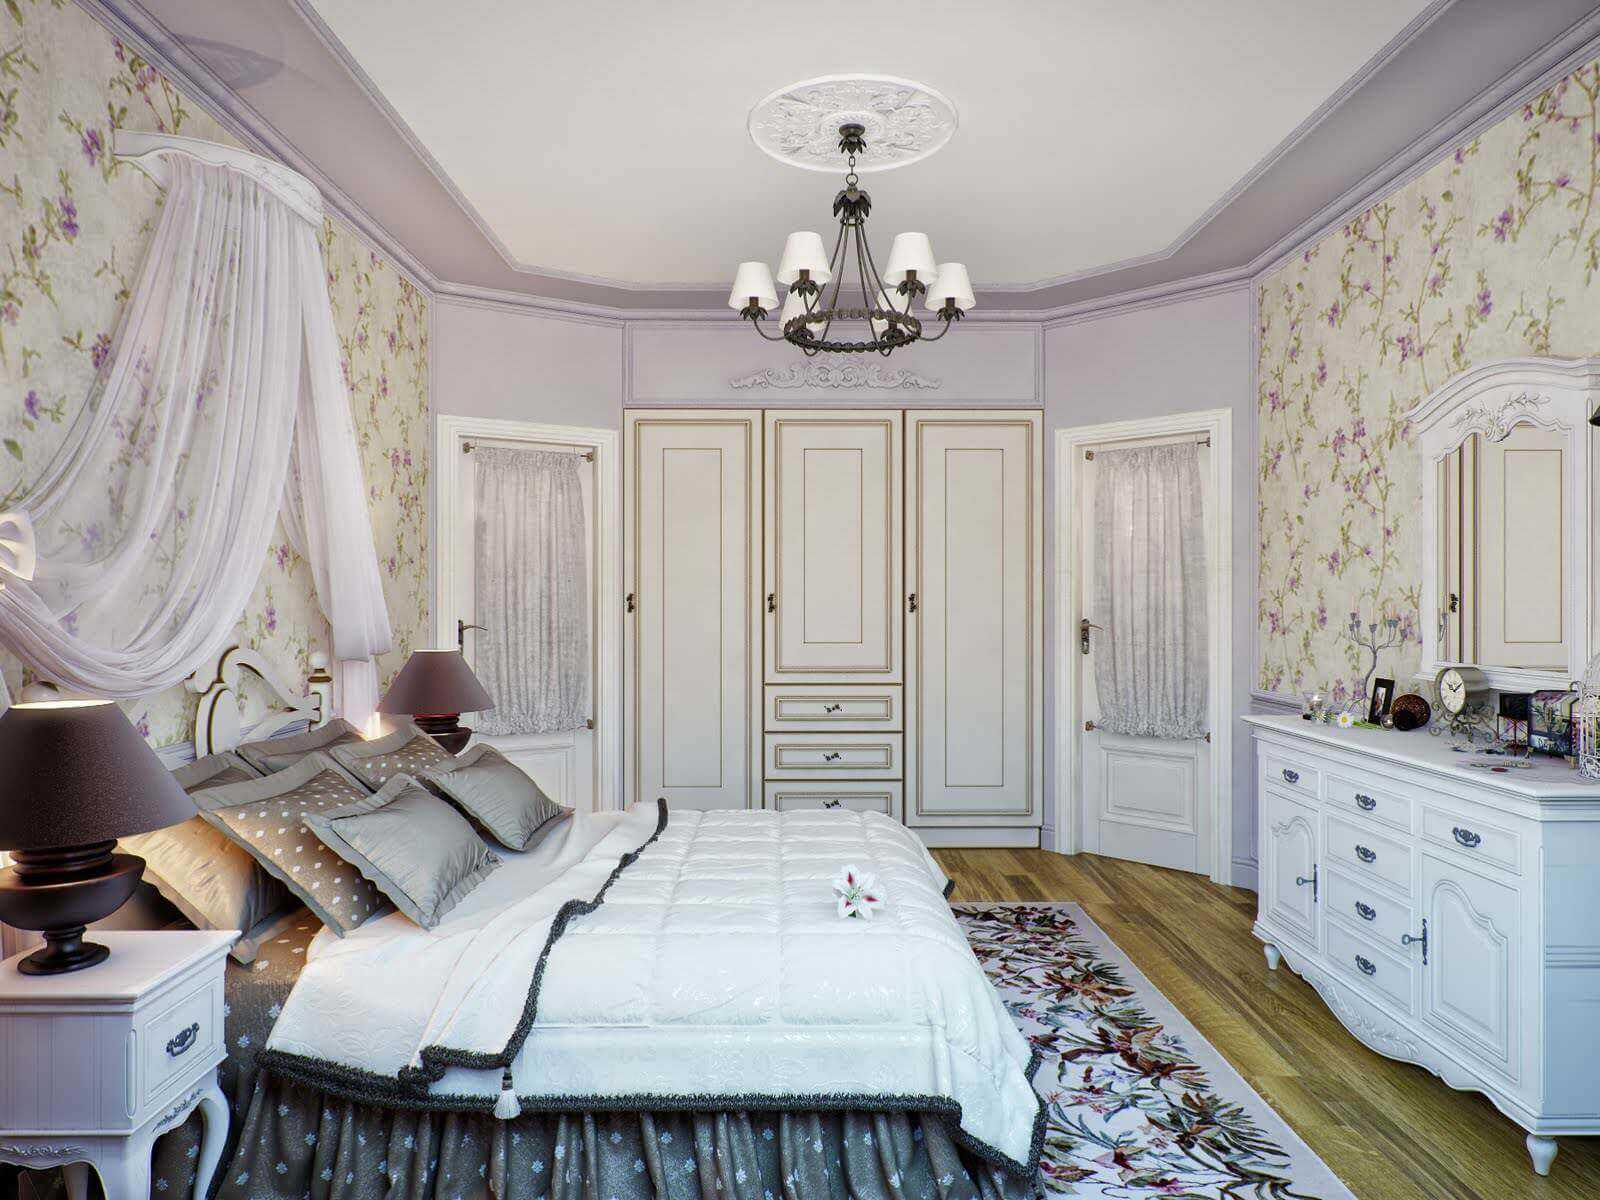 mooi slaapkamerdecor in de stijl van de Provence